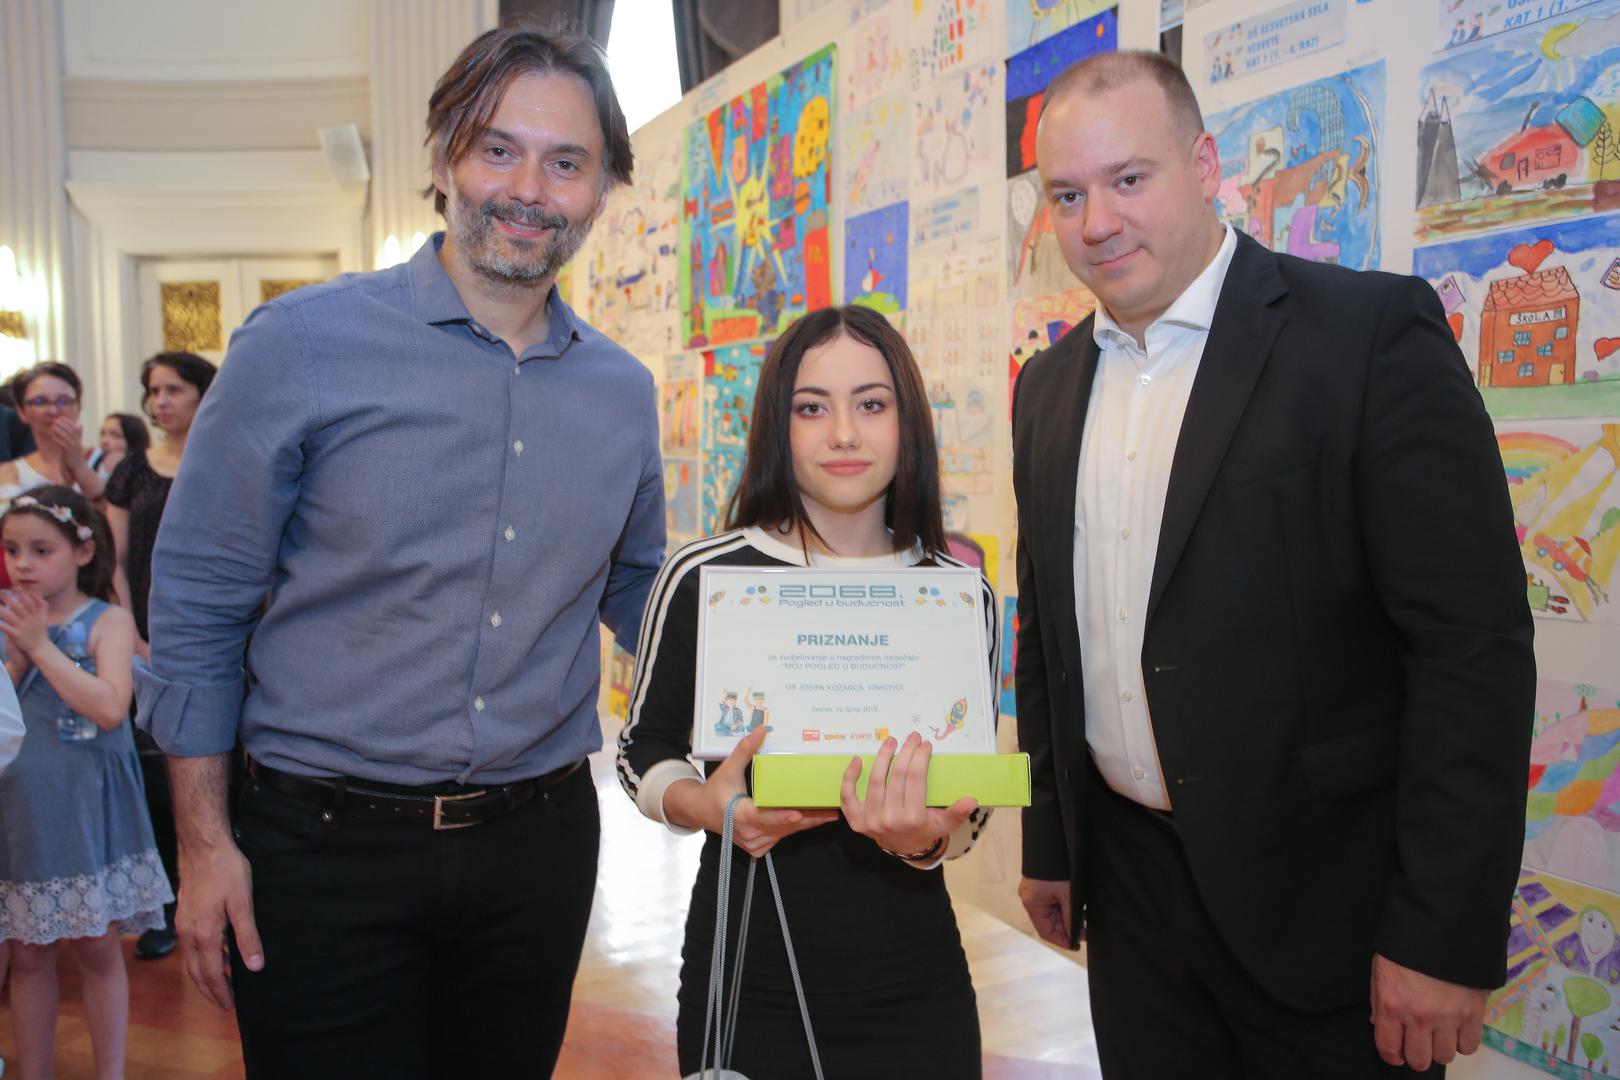 Glavni urednik Večernjeg lista Dražen Klarić pobjednicima je dodijelio nagrade s Benjaminom Sakomanom, predstavnikom breda Argeta koji je partner izložbe